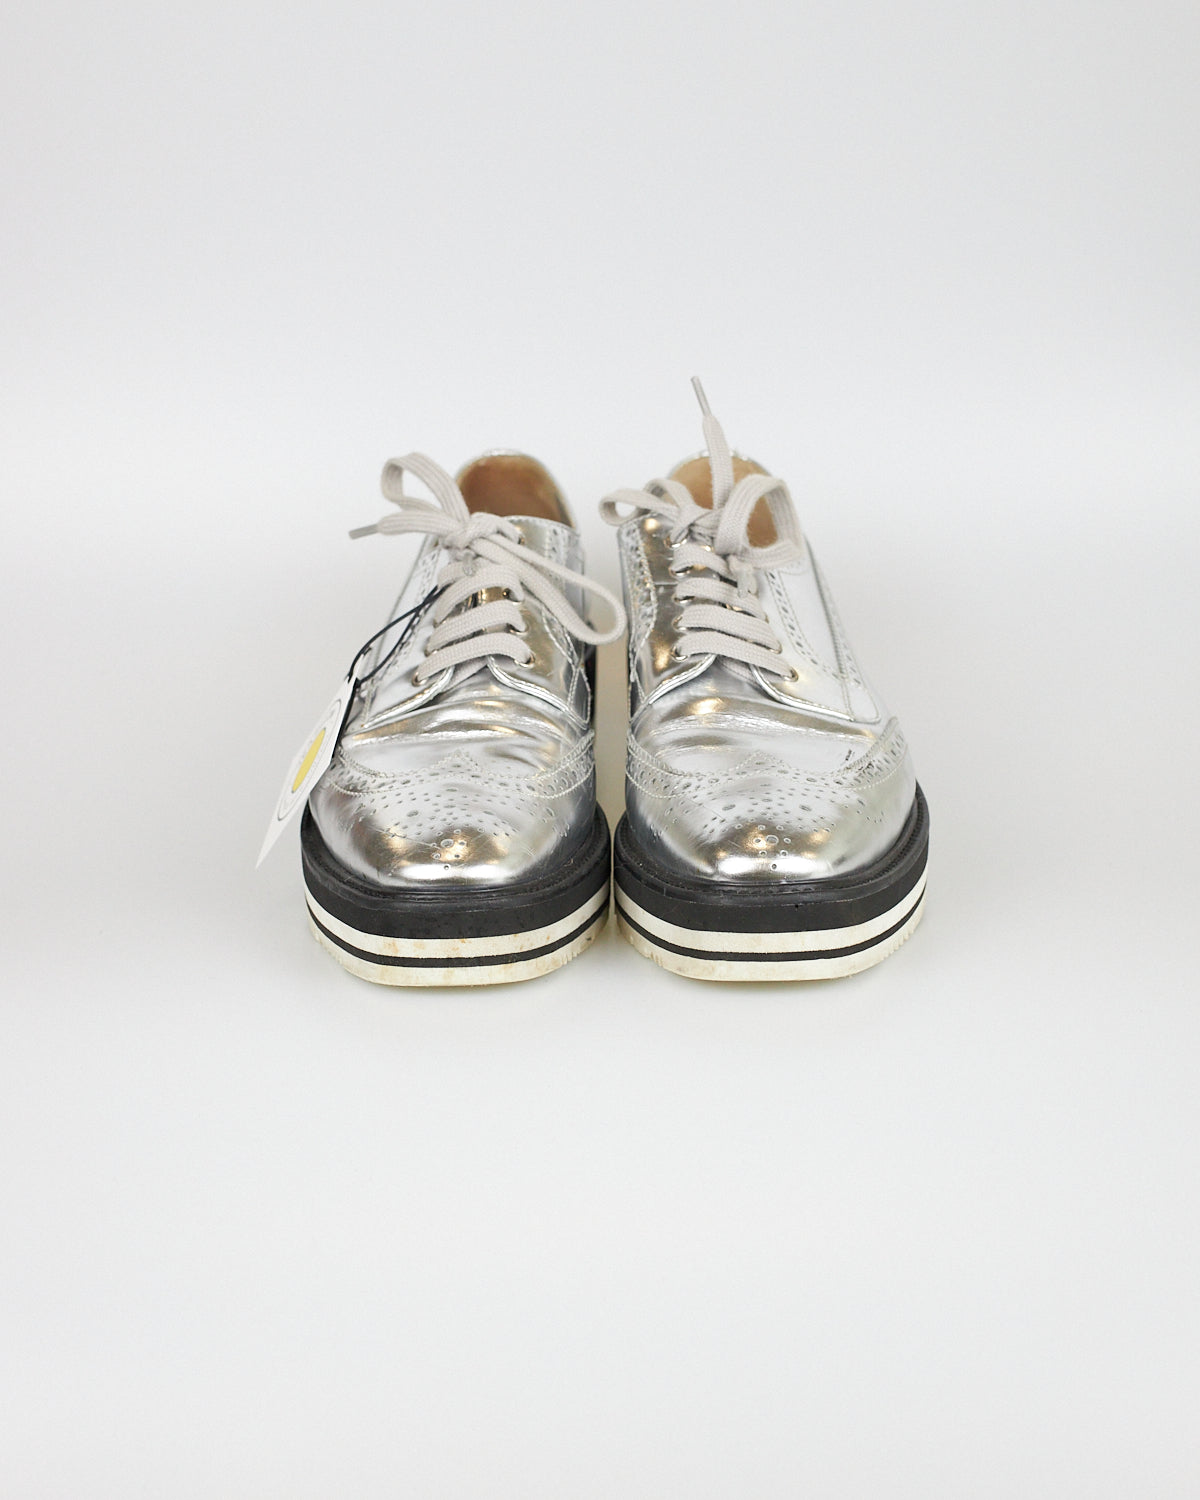 Prada Metallic Oxford Shoes - Size 40